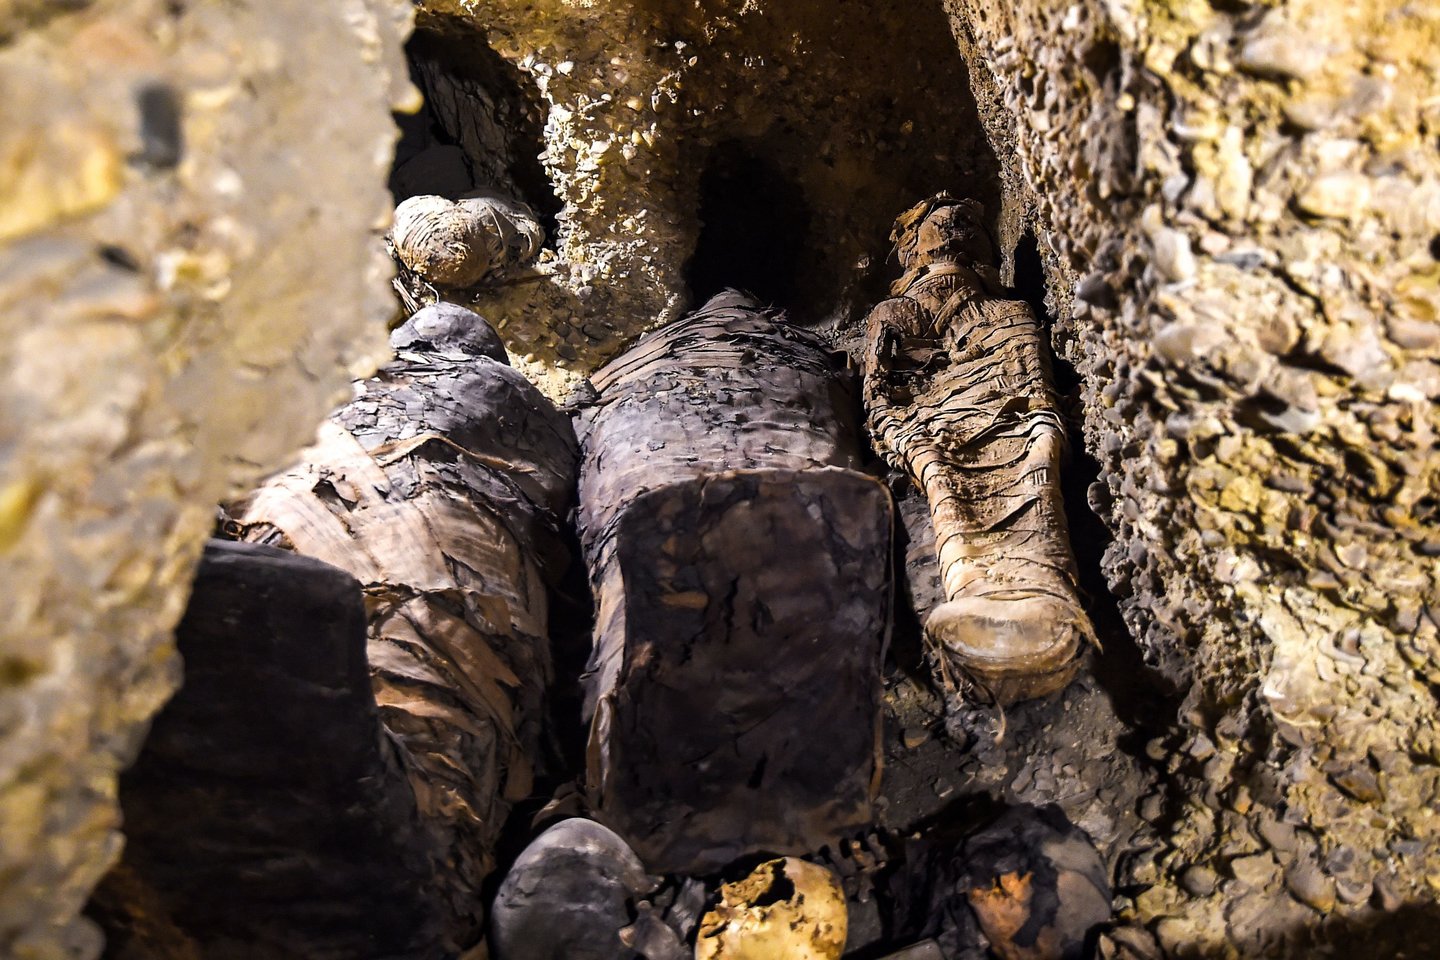 Airijos policija surado 800 metų senumo kryžininko mumijos galvą, kuri buvo pavogta iš Dublino Šv. Maikano bažnyčios kriptos.<br>AFP/Scanpix nuotr.